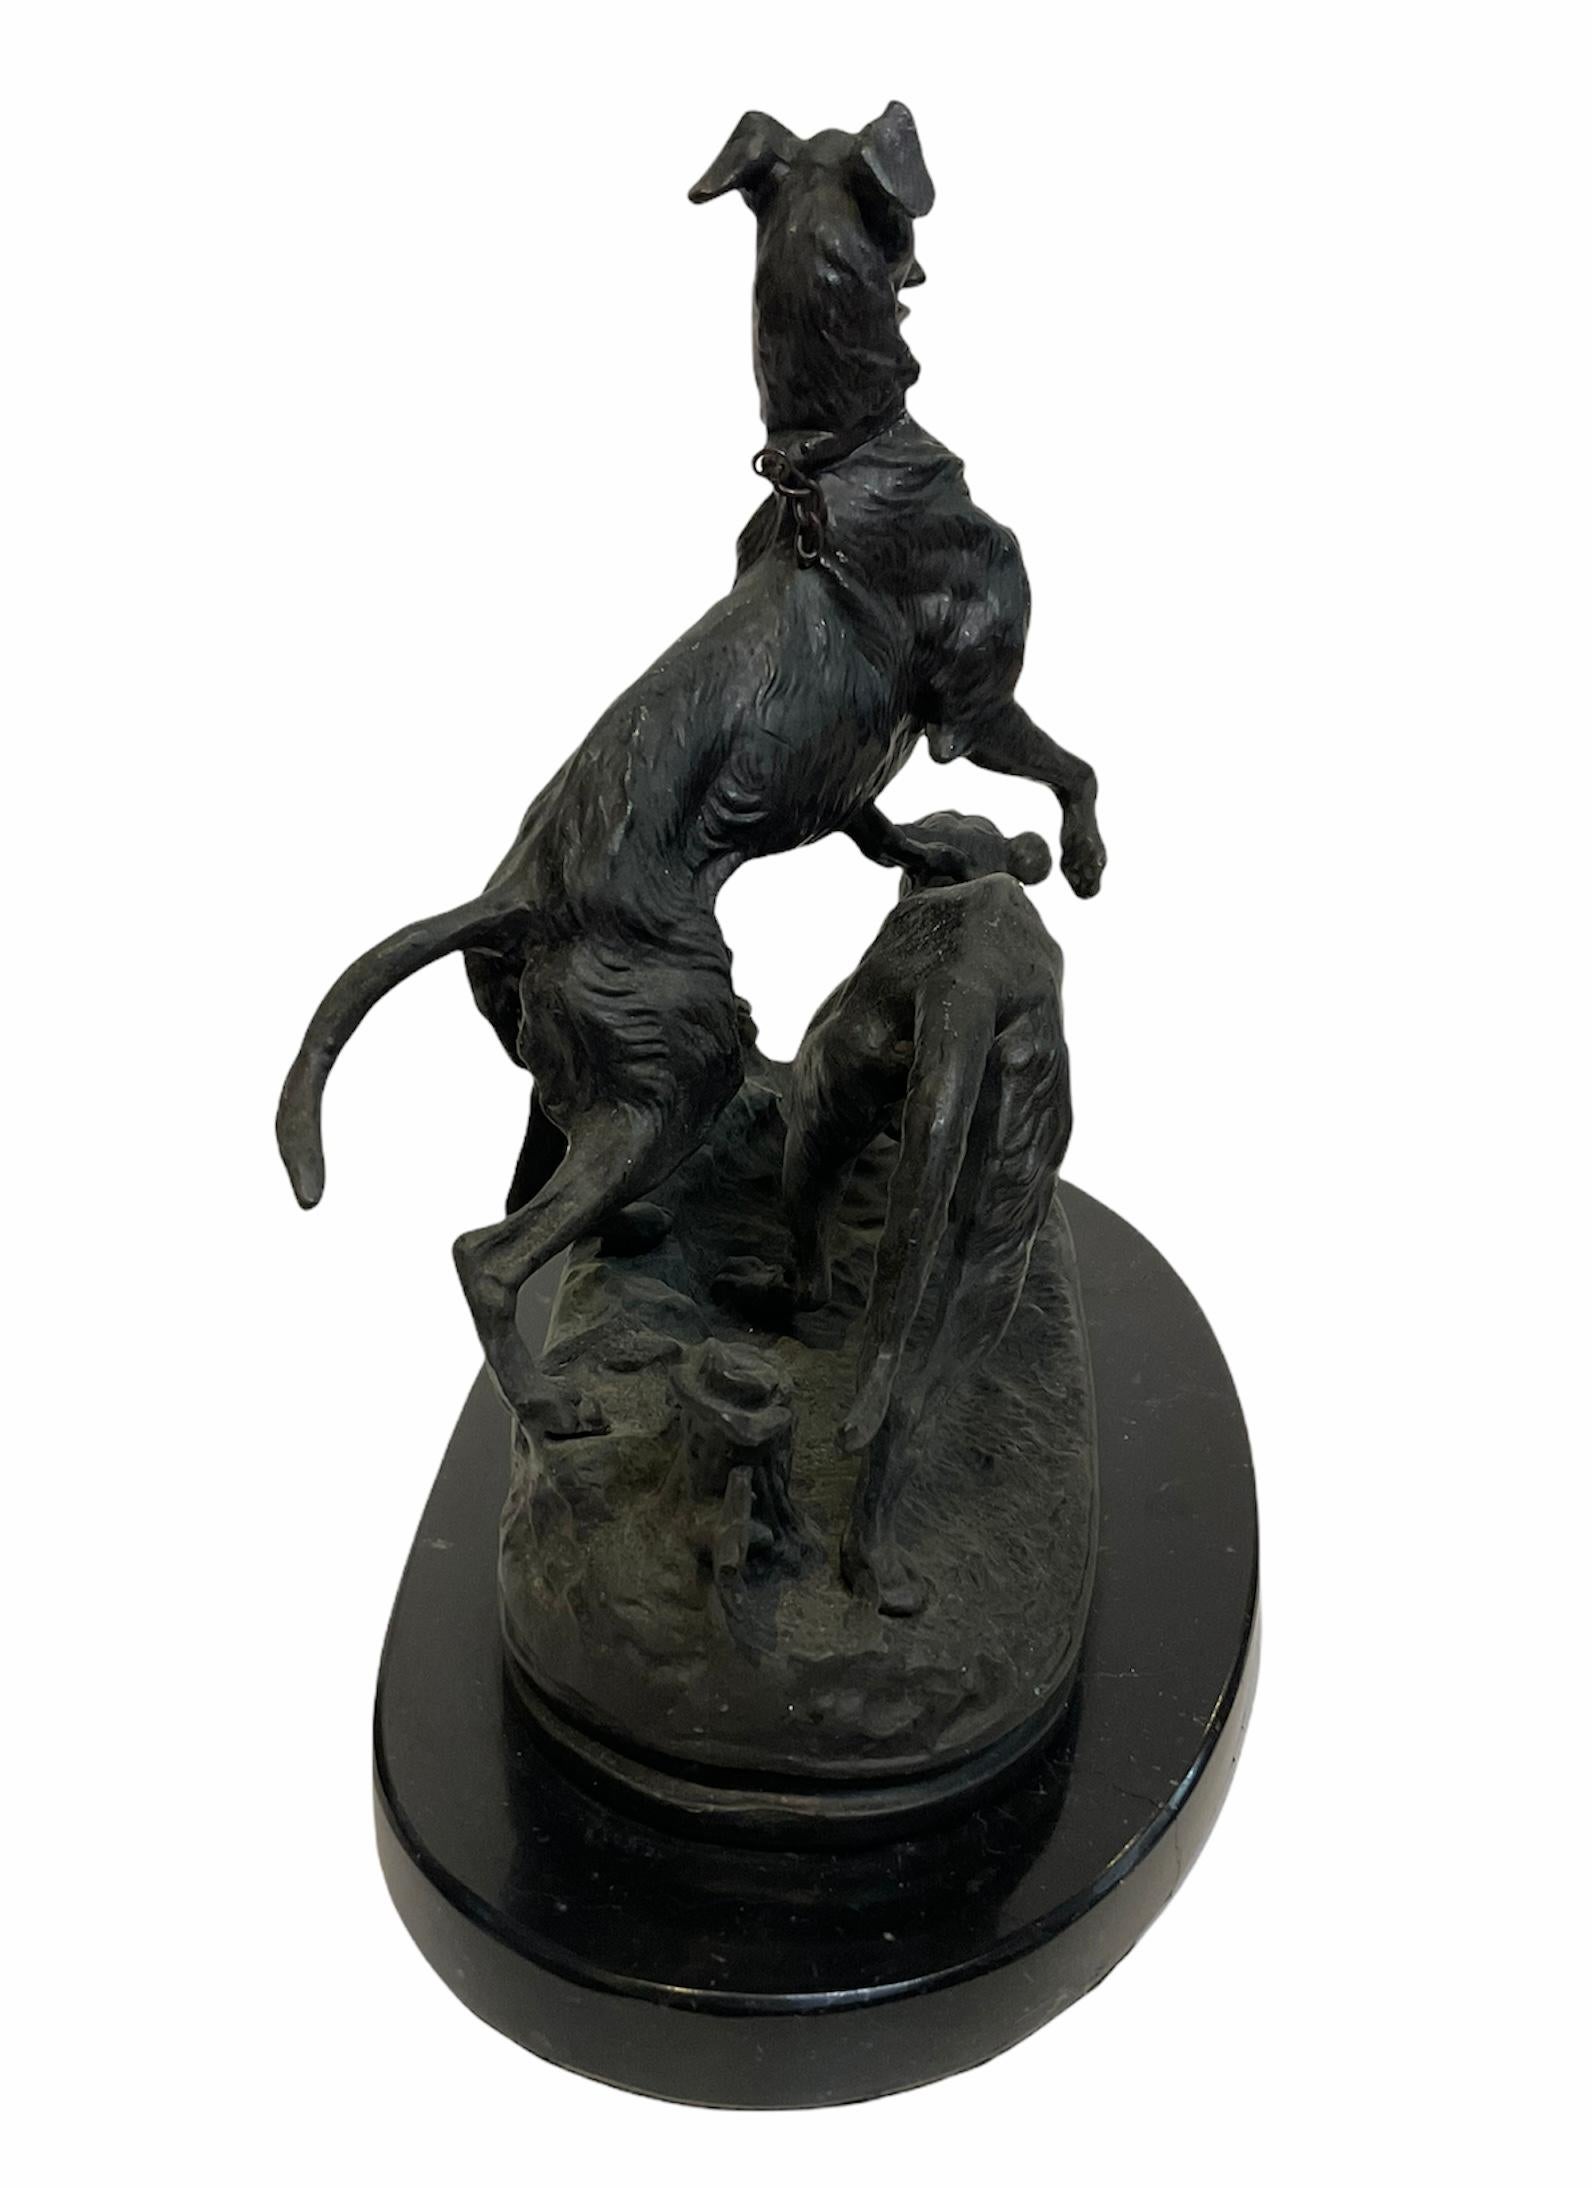 Il s'agit d'une sculpture en bronze patiné de P.J.Mene représentant un couple de chiens de chasse. Il est considéré comme l'un des pionniers de la sculpture animalière du XIXe siècle. Les sculptures représentent un chien whippet poilu qui se tient